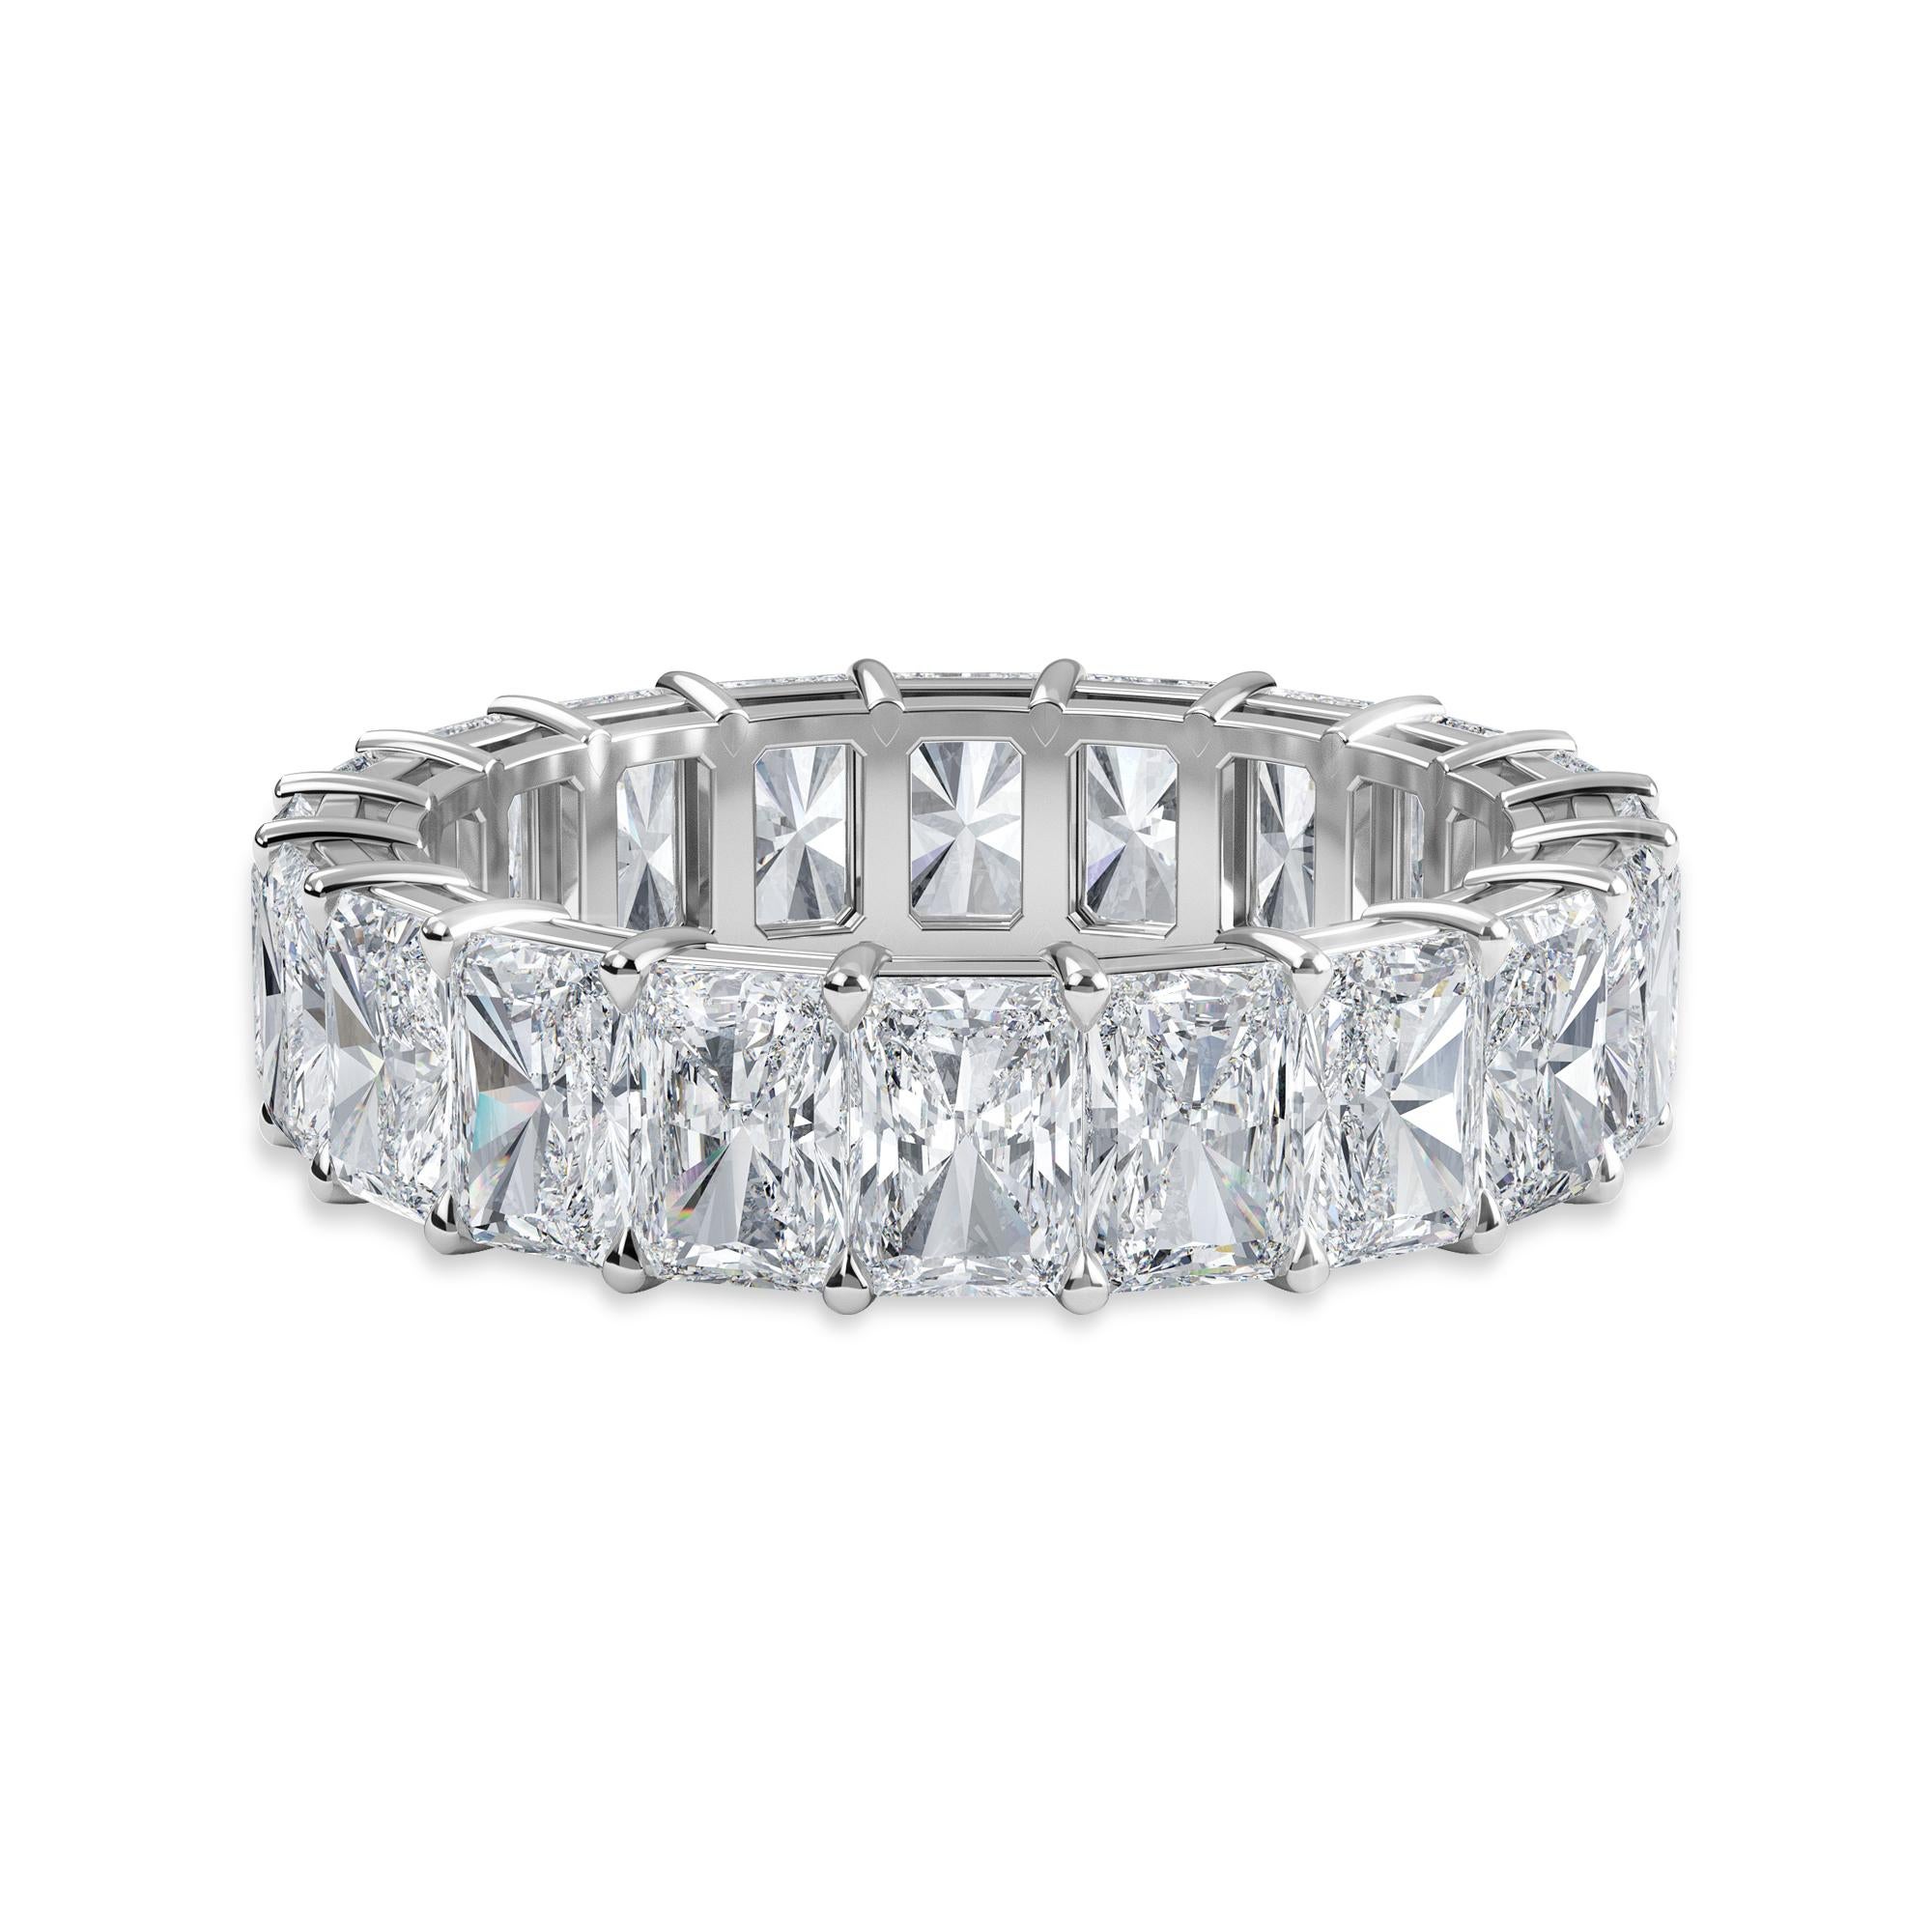 Dieser strahlende Diamantring hat 20 Diamanten und ein Gesamtkarat von 6,25.
Die Diamanten sind F Farbe, VS Klarheit. Der Ring hat die Fingergröße 6,25 und ist in Platin gefasst.